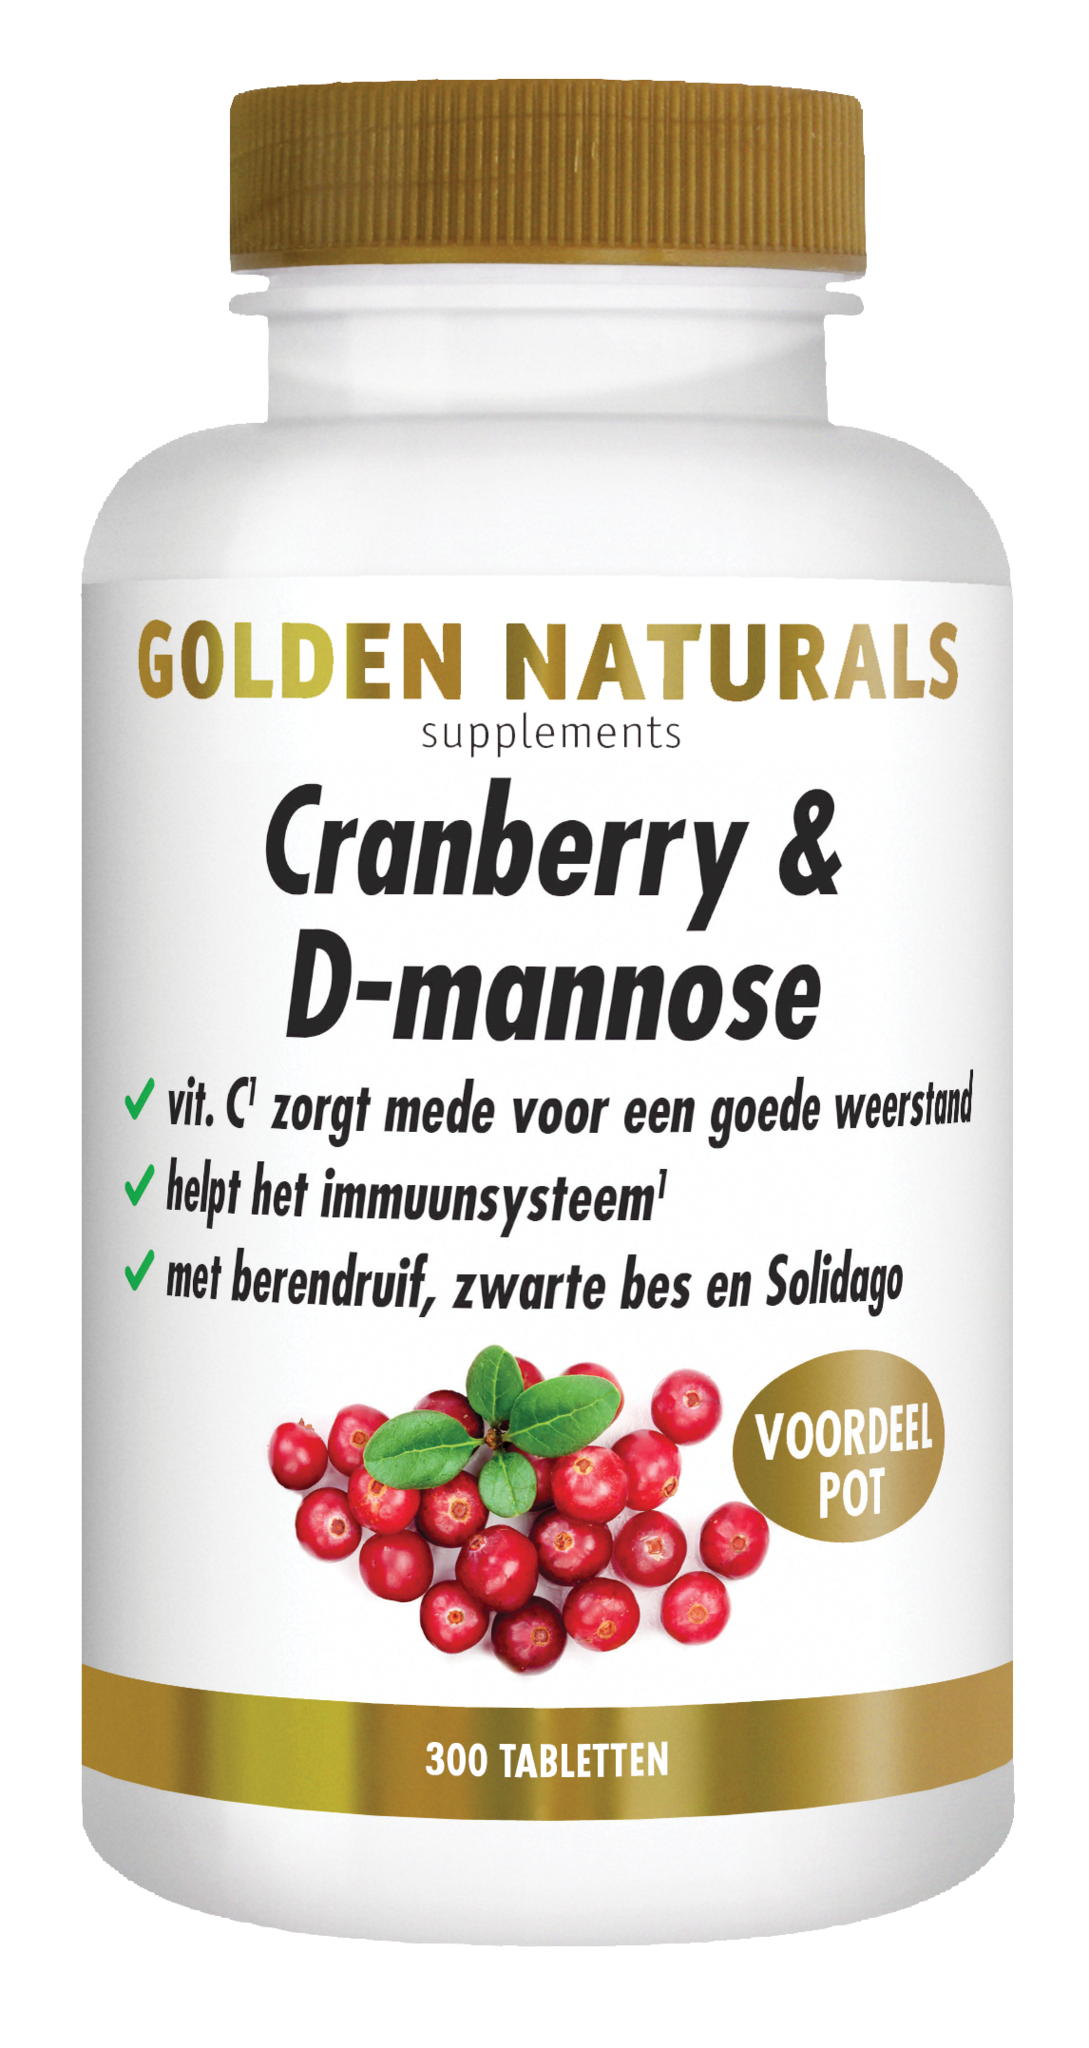 Golden Naturals Golden Naturals Cranberry & D-Mannose (300 Tabletten)